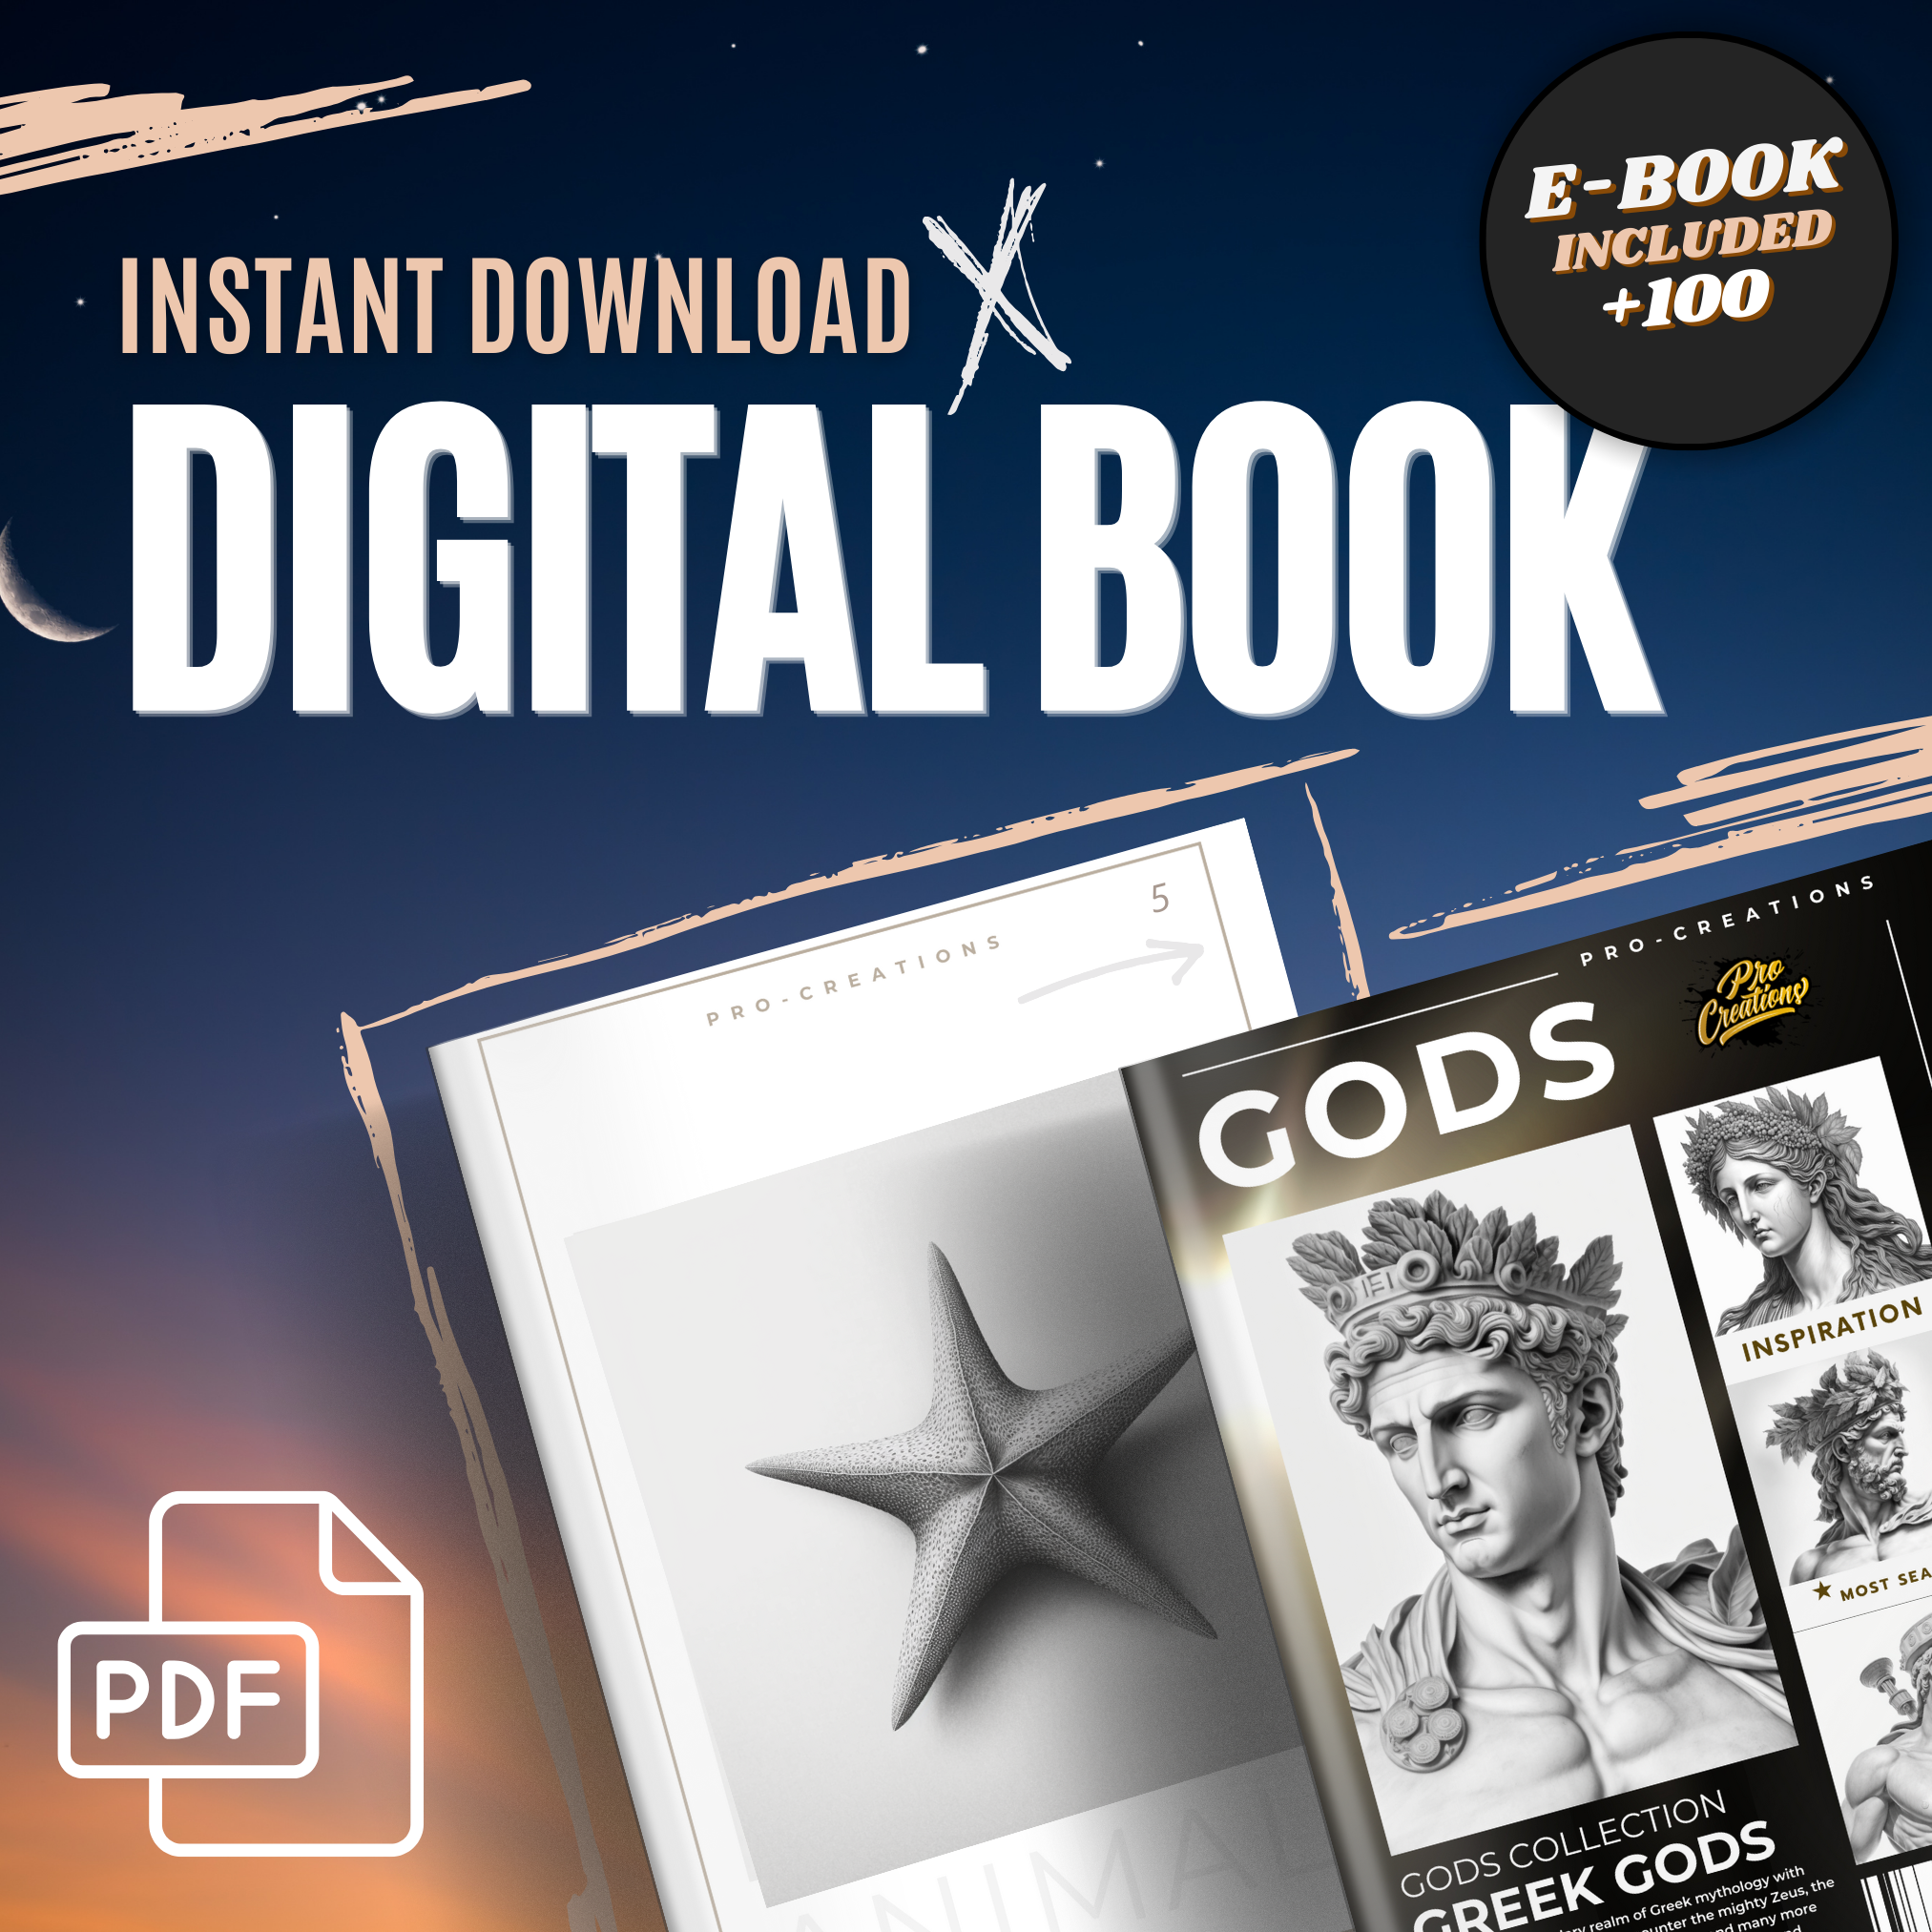 Greek Gods Digital Design Collection: 50 Procreate & Sketchbook Images